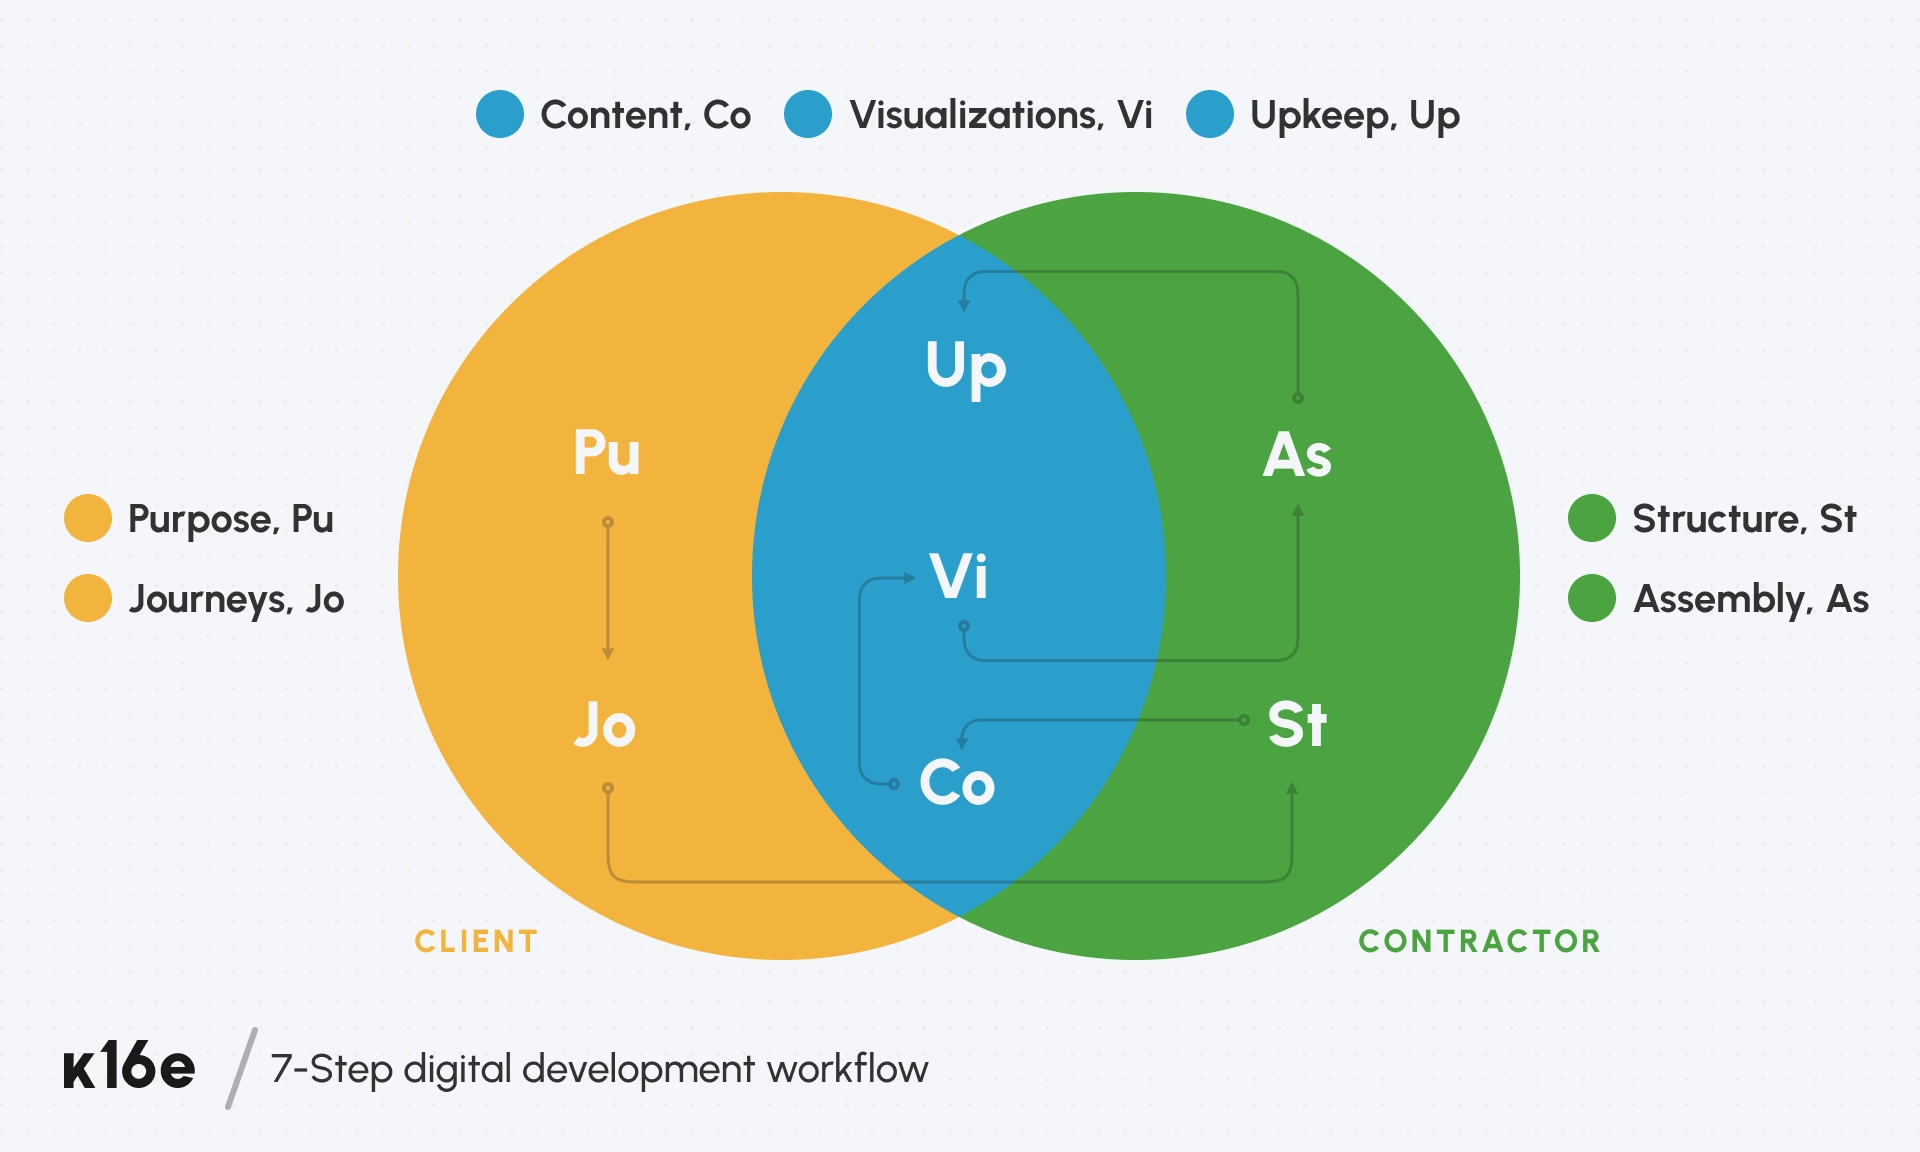 Schema design of the 7-step digital development workflow by K16E